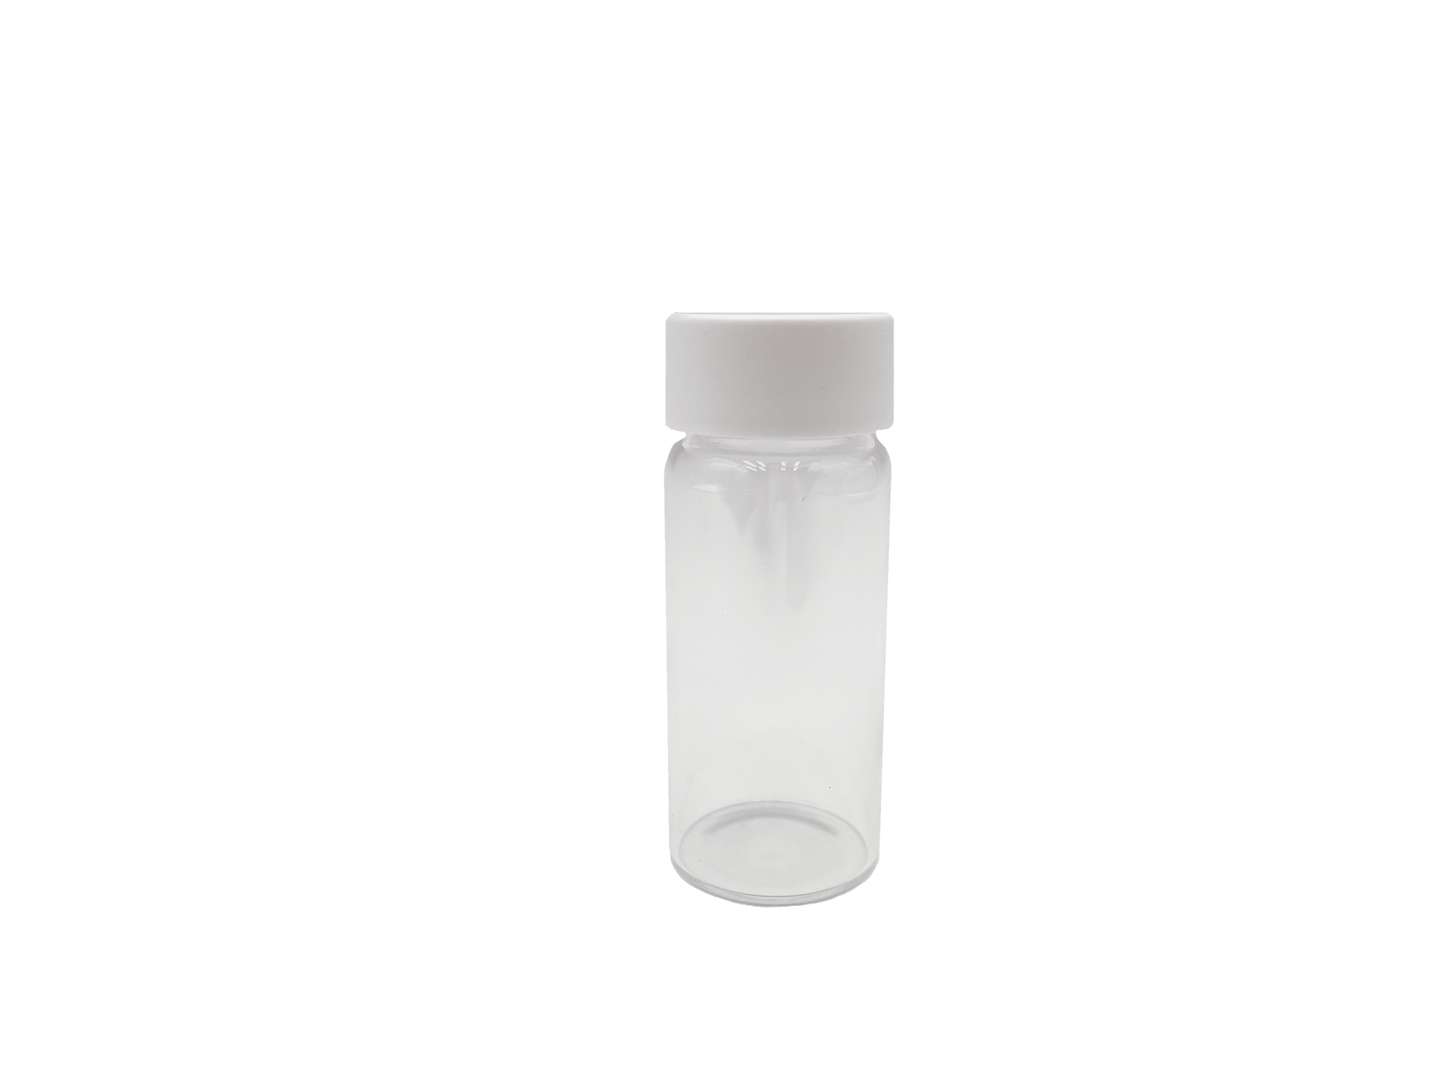 eBottles 2 oz Glass Jar (28mm) - Fits 5 Prerolls